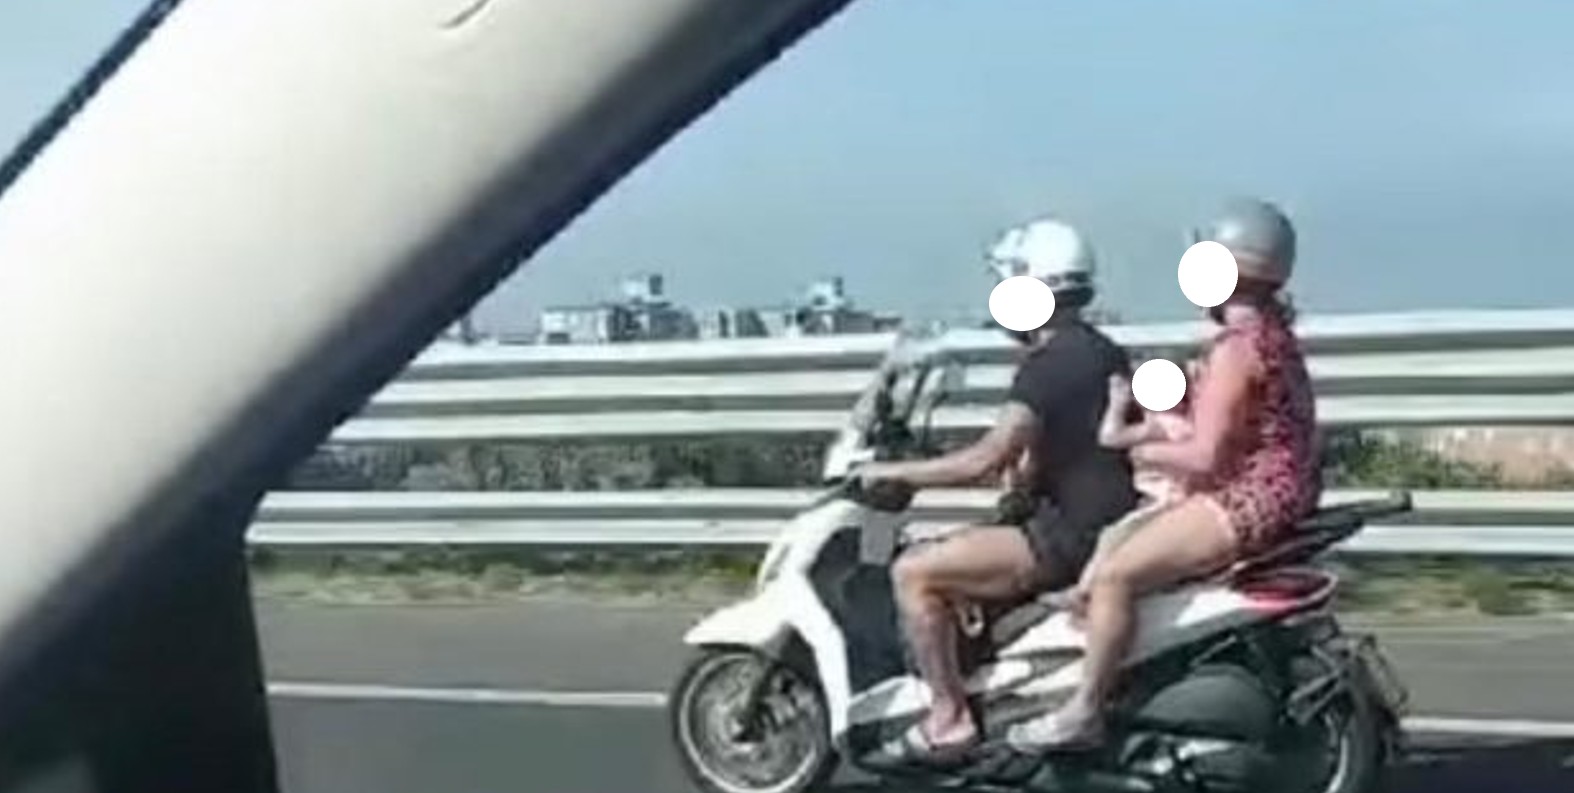 Neonato senza casco in autostrada sullo scooter tra i genitori: individuati e sanzionati i responsabili